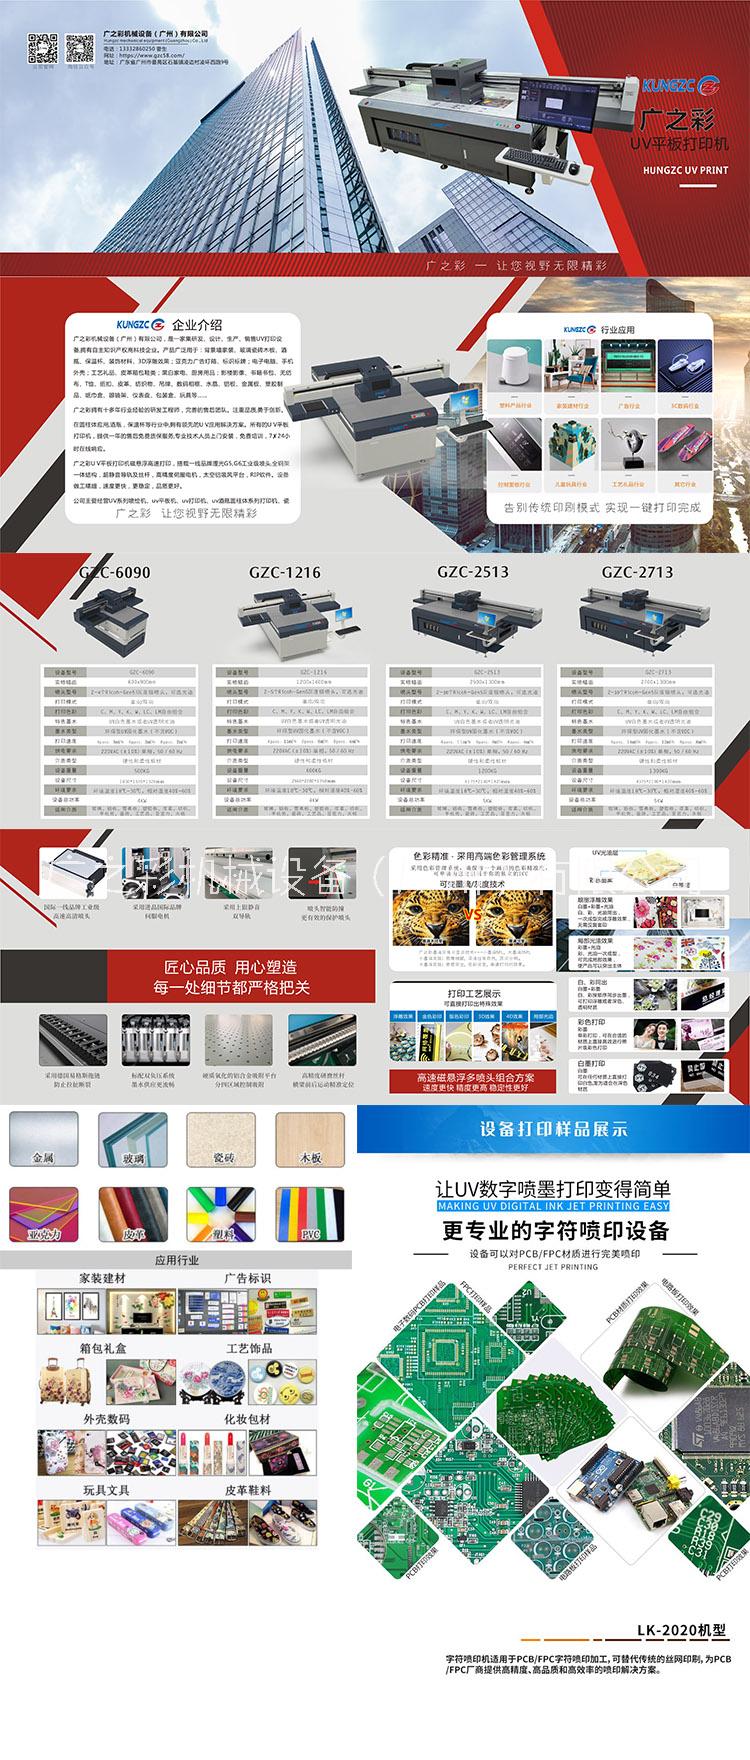 广之彩UV平板打印机KUNGZC重庆市平板电脑打印机广之彩UV平板打印机KUNGZC1216可用于包装 装饰 天花板 木板 复合板